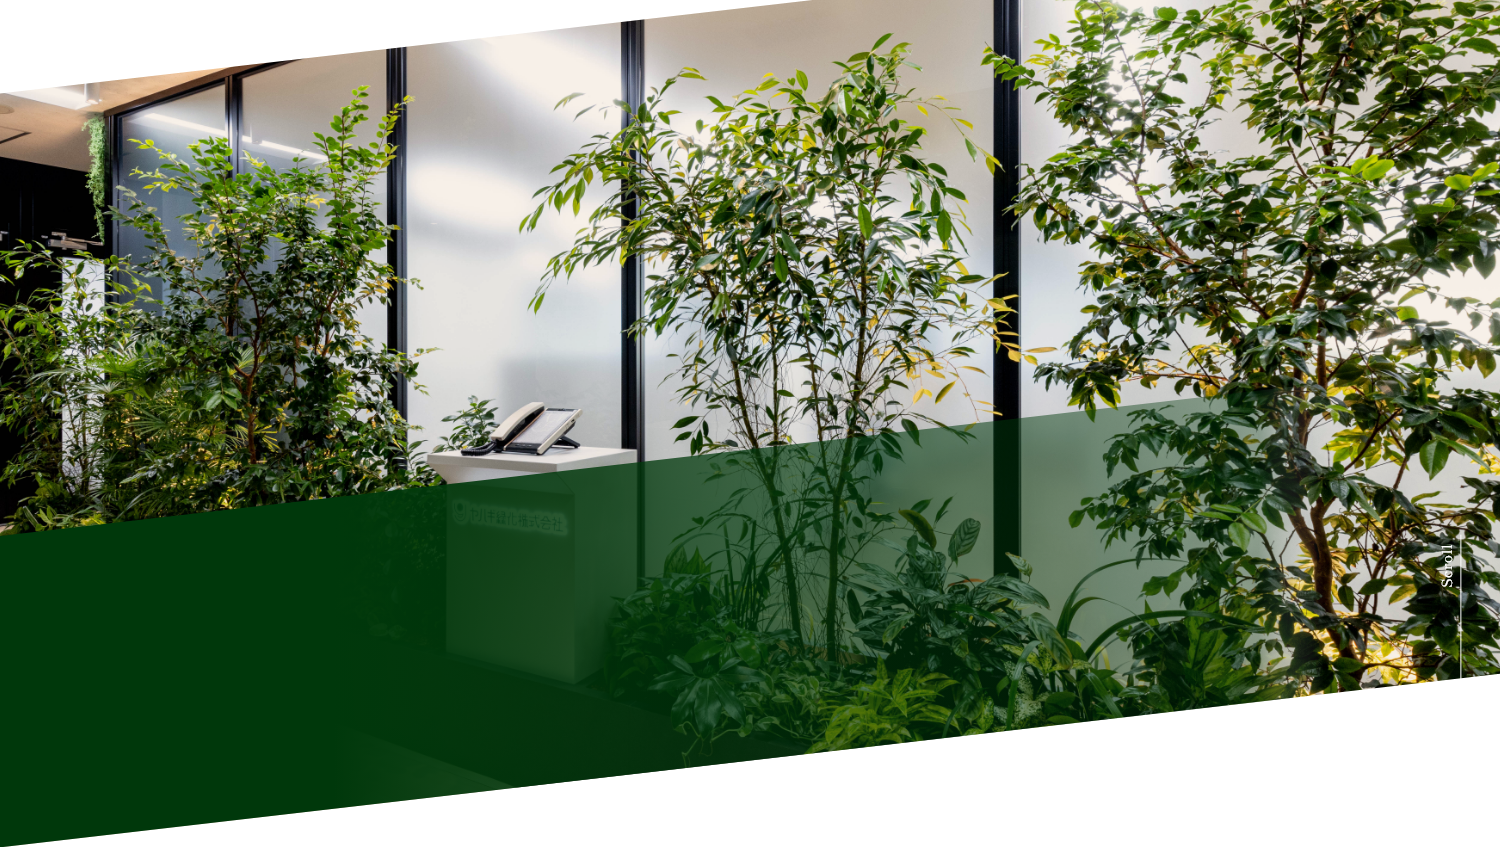 「緑のチカラ」でオフィスを彩る。
                        目指したのは、働く人や訪れる人が心地よく過ごせる人と環境にやさしいオフィス空間。
                        理想をカタチにしたヤハギ緑化のオフィスを事例にご紹介します。